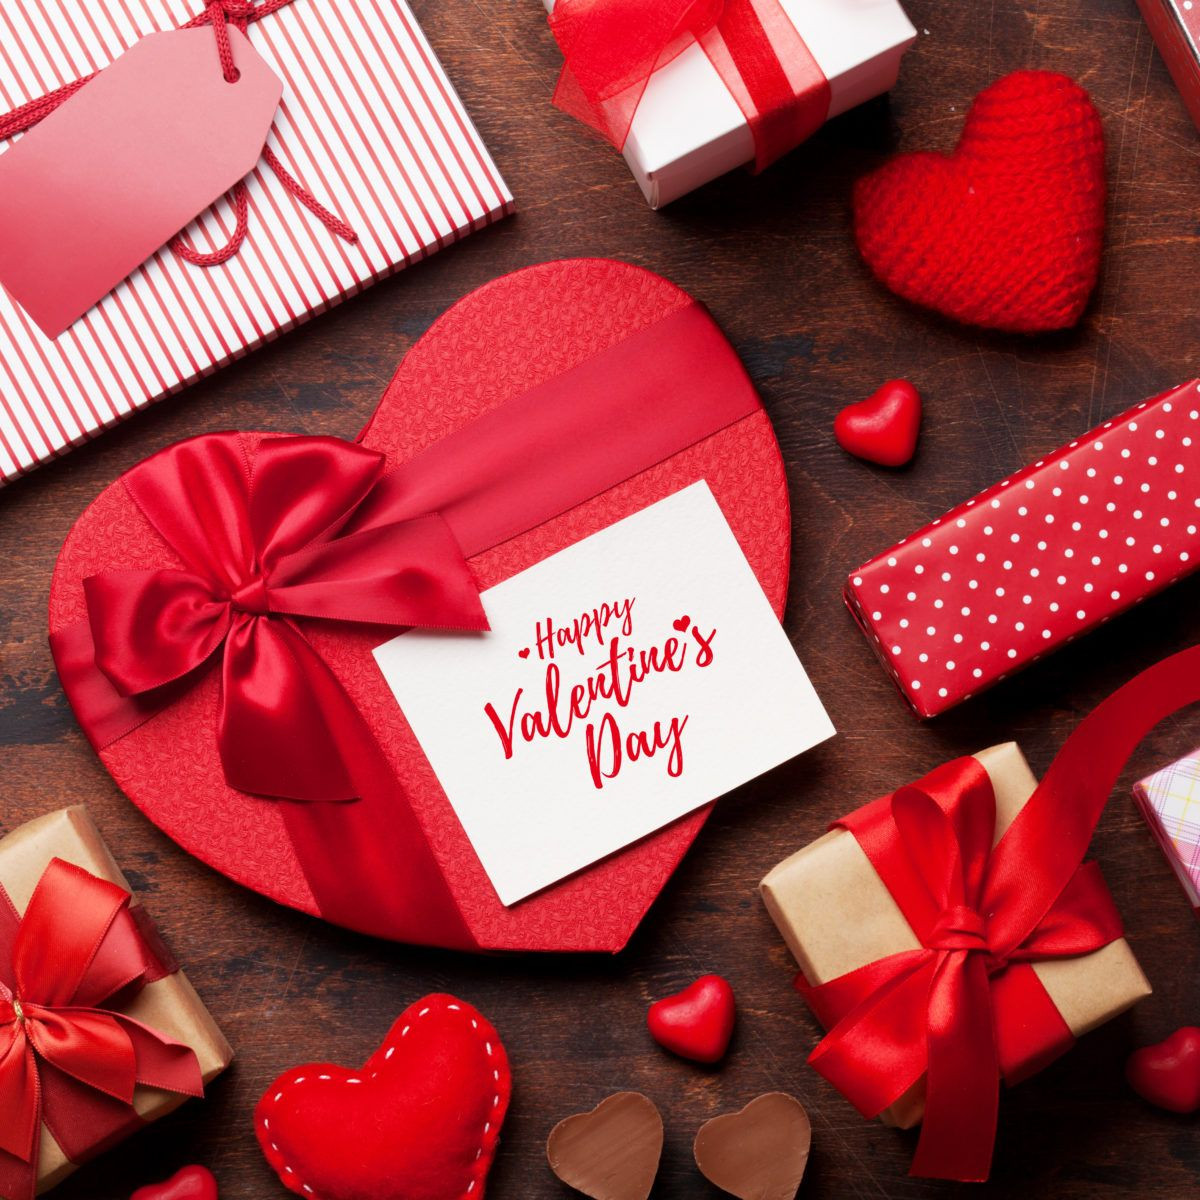 Valentine Gift Ideas Under $10
 30 Great Valentine Gifts Under $10 in 2020